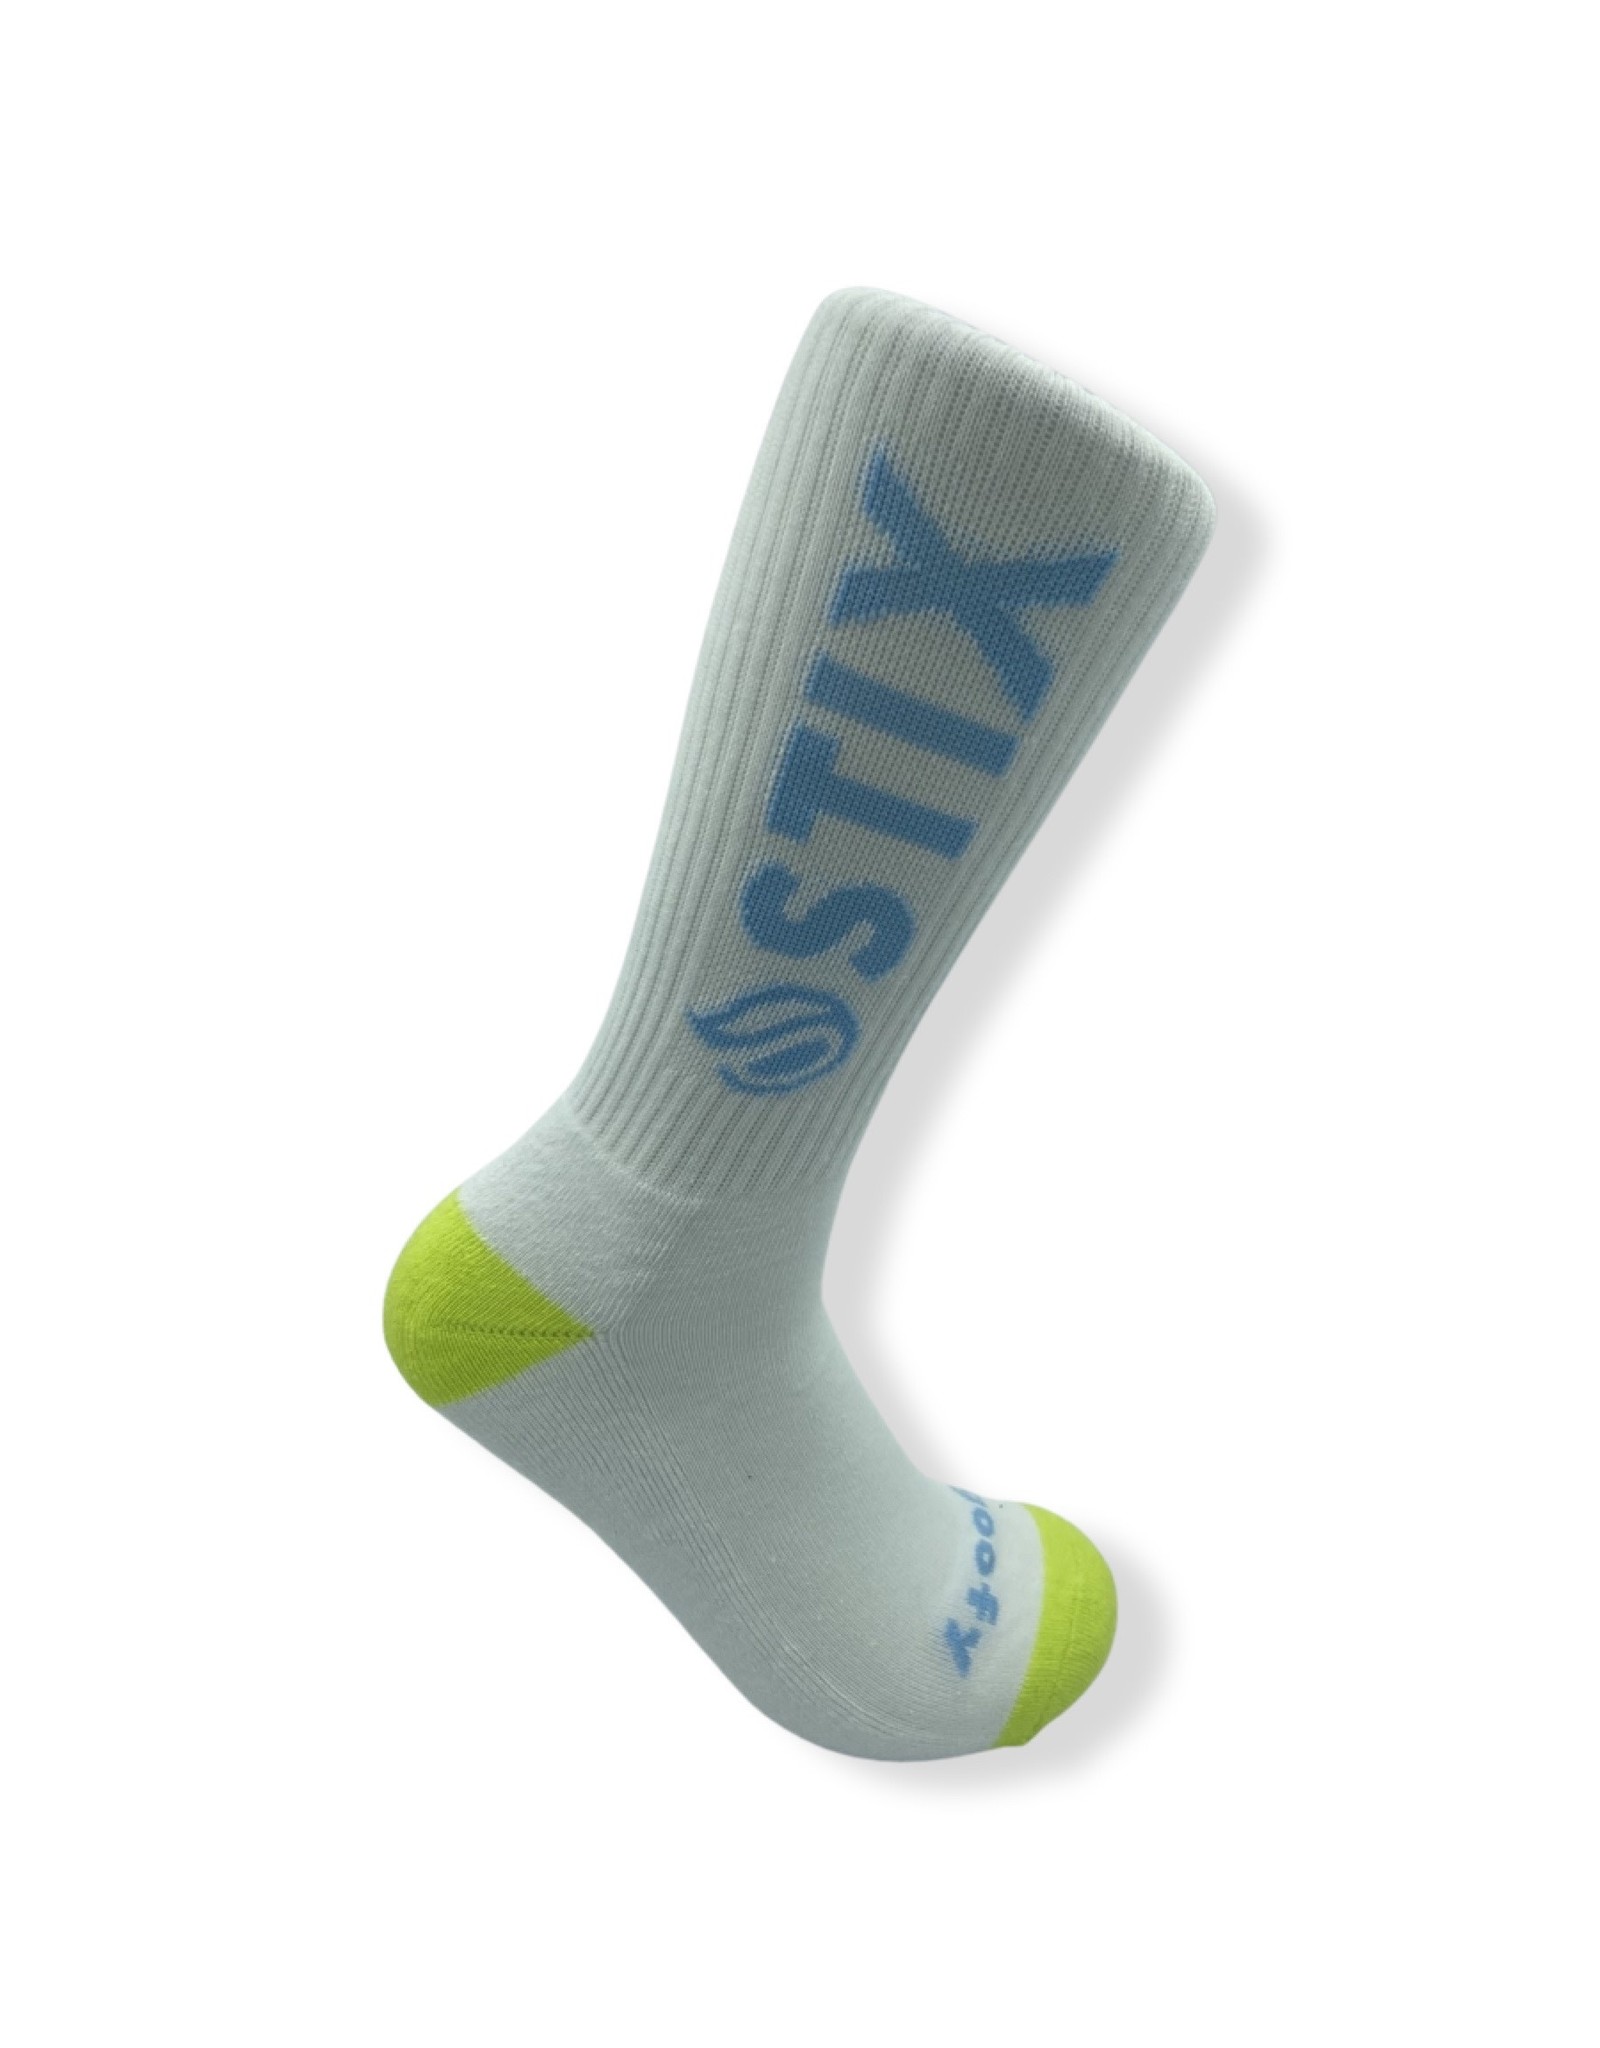 Stix Stix Socks Classic Crew (White/Green/Blue)